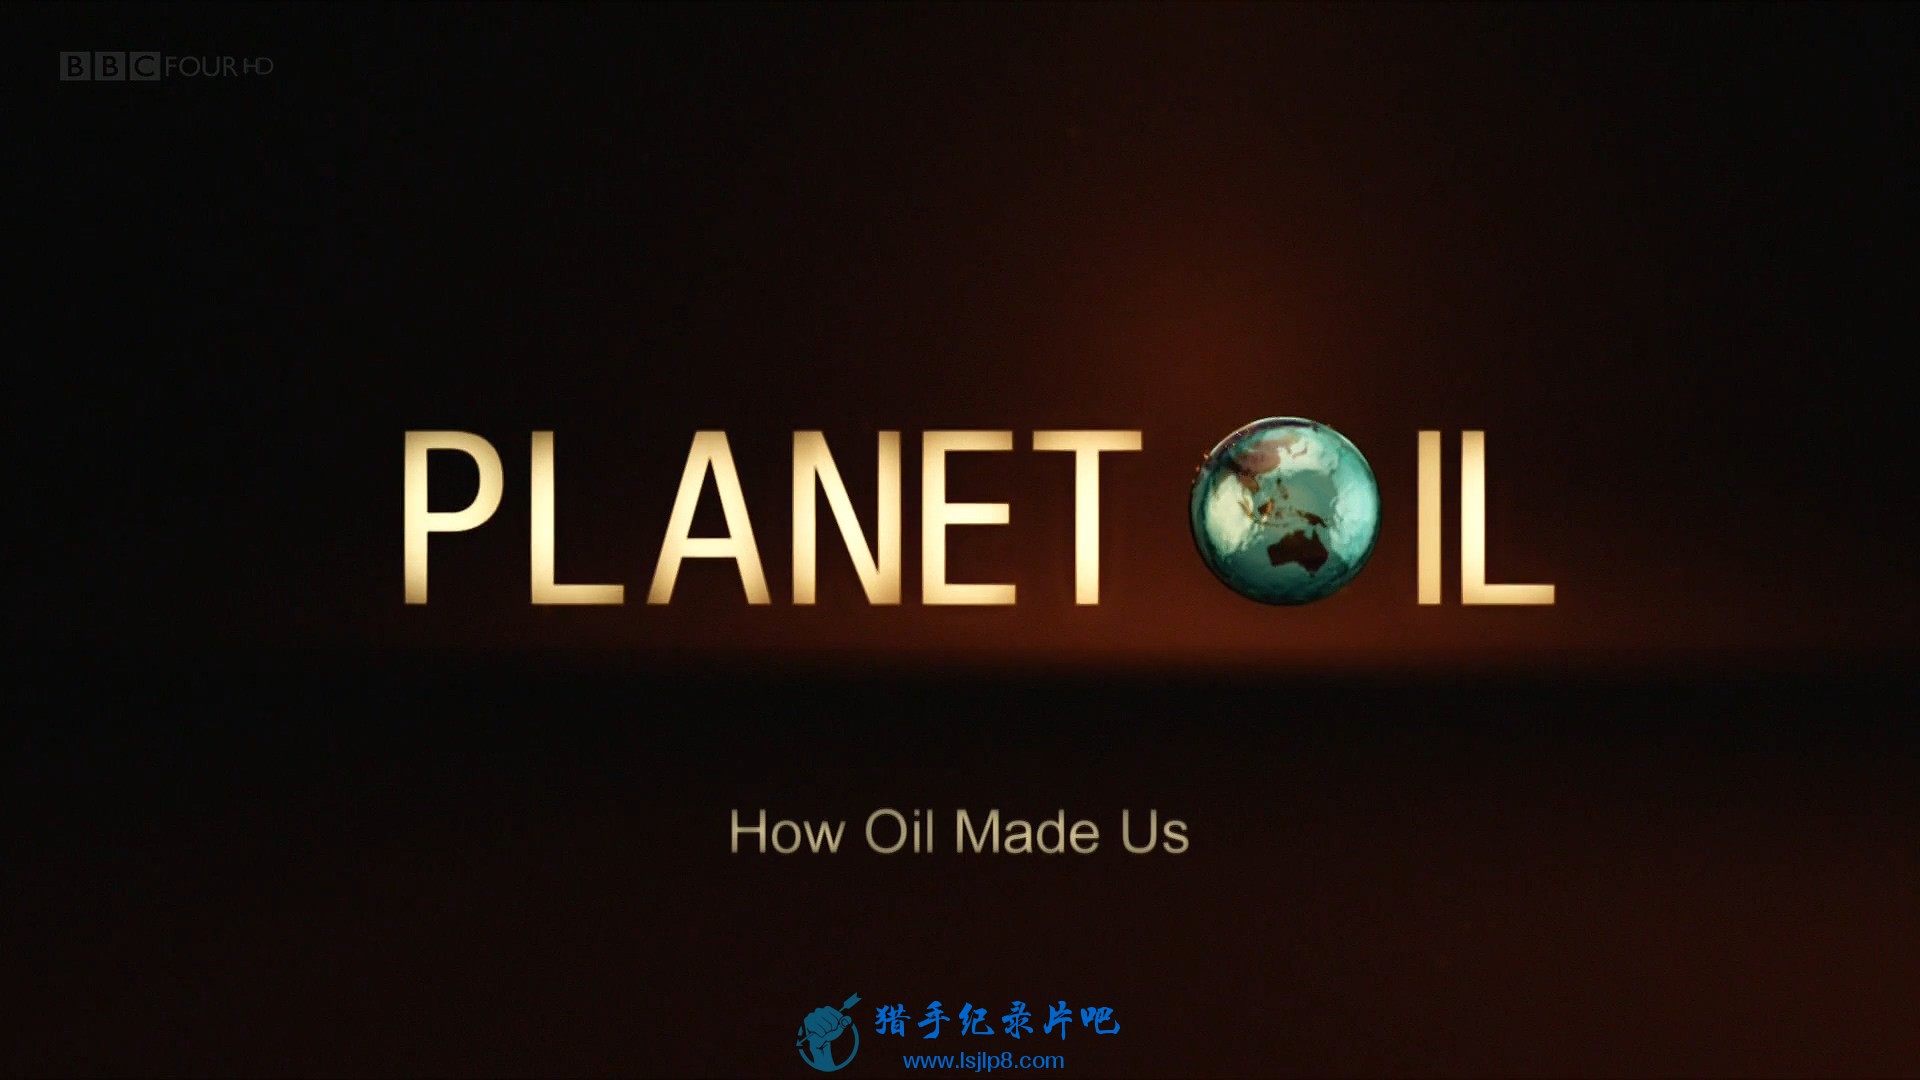 BBC.Planet.Oil.1of3.How.Oil.Made.Us.1080p.HDTV.x264.AAC.MVGroup.org.mkv_20210702.jpg